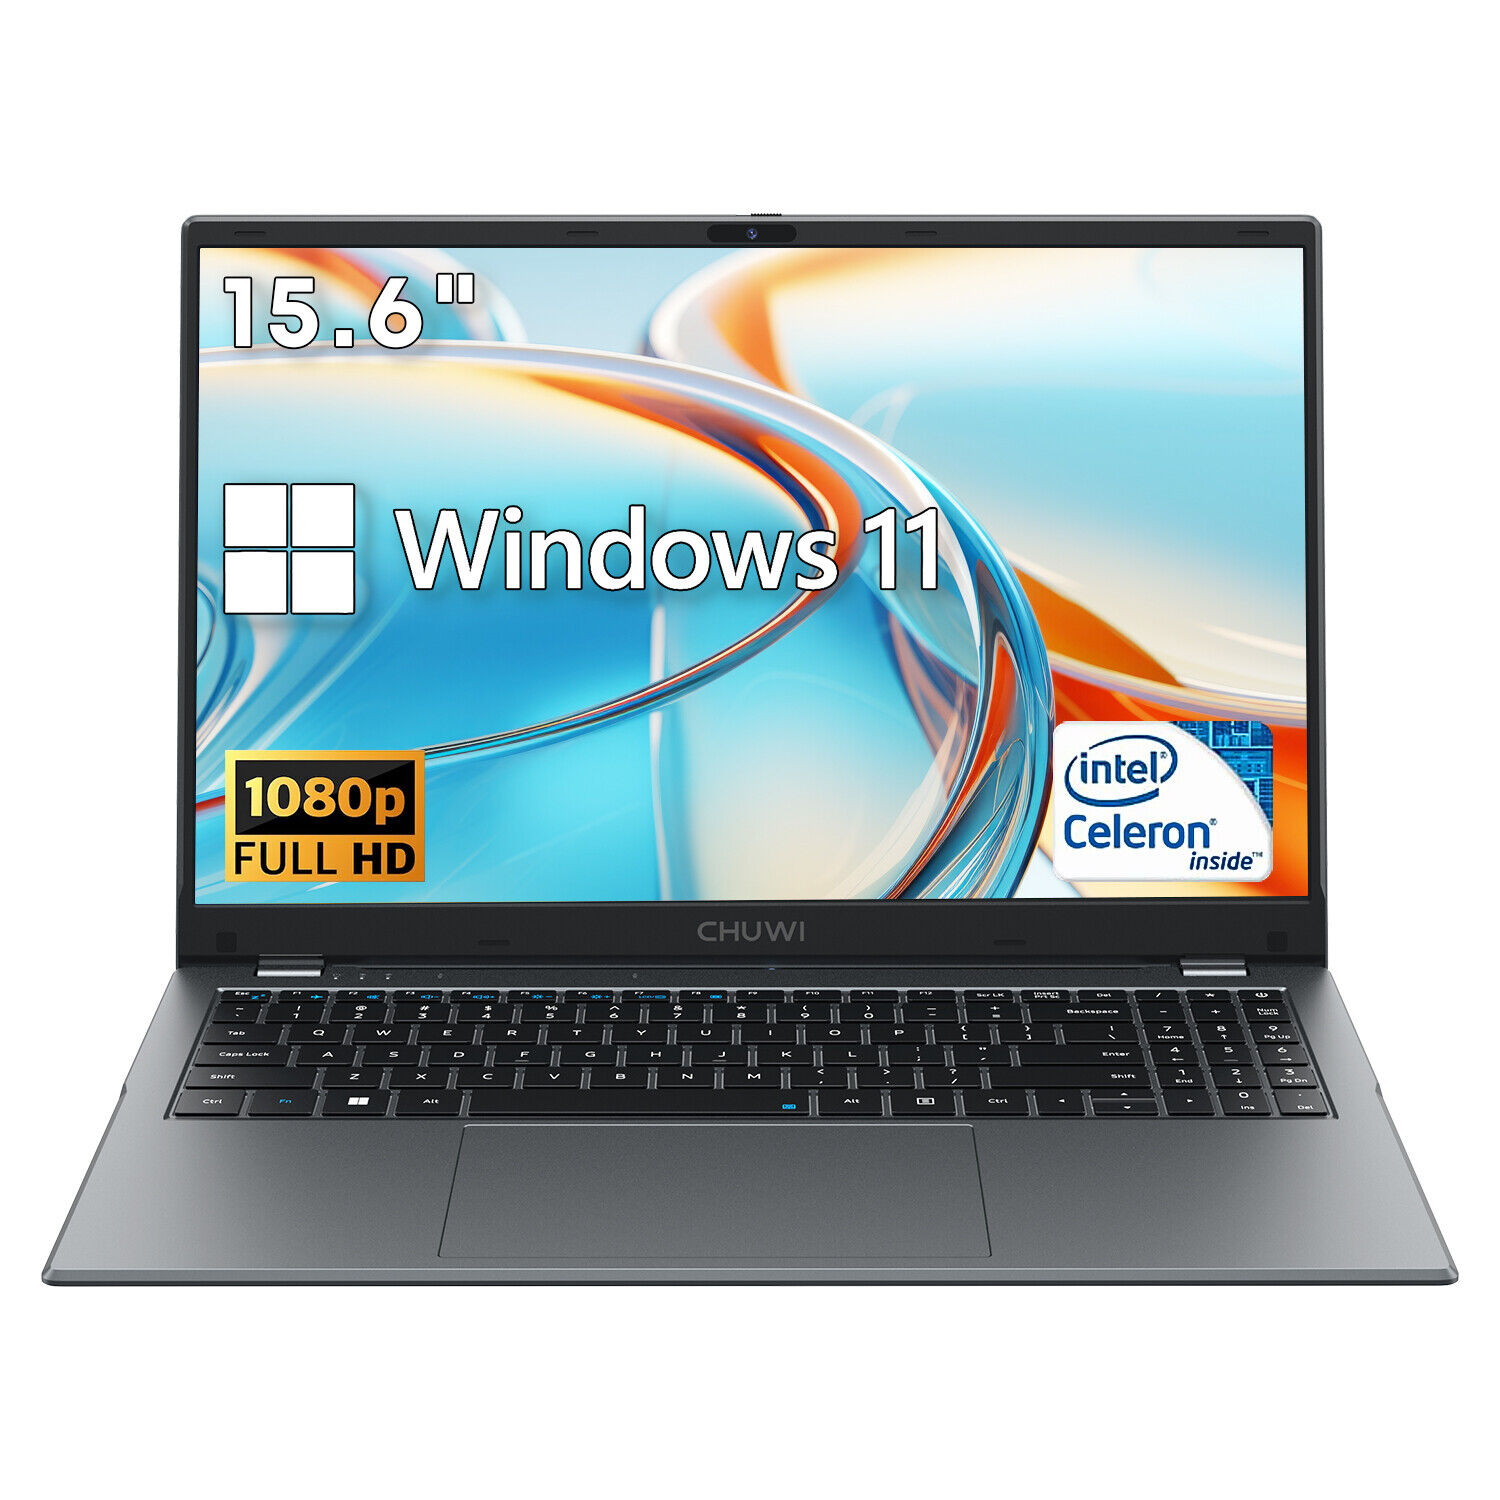 CHUWI 15.6'' Laptop 8GB RAM 256G SSD Intel Celeron Quad-Core 2.80 GHz HD 1080P